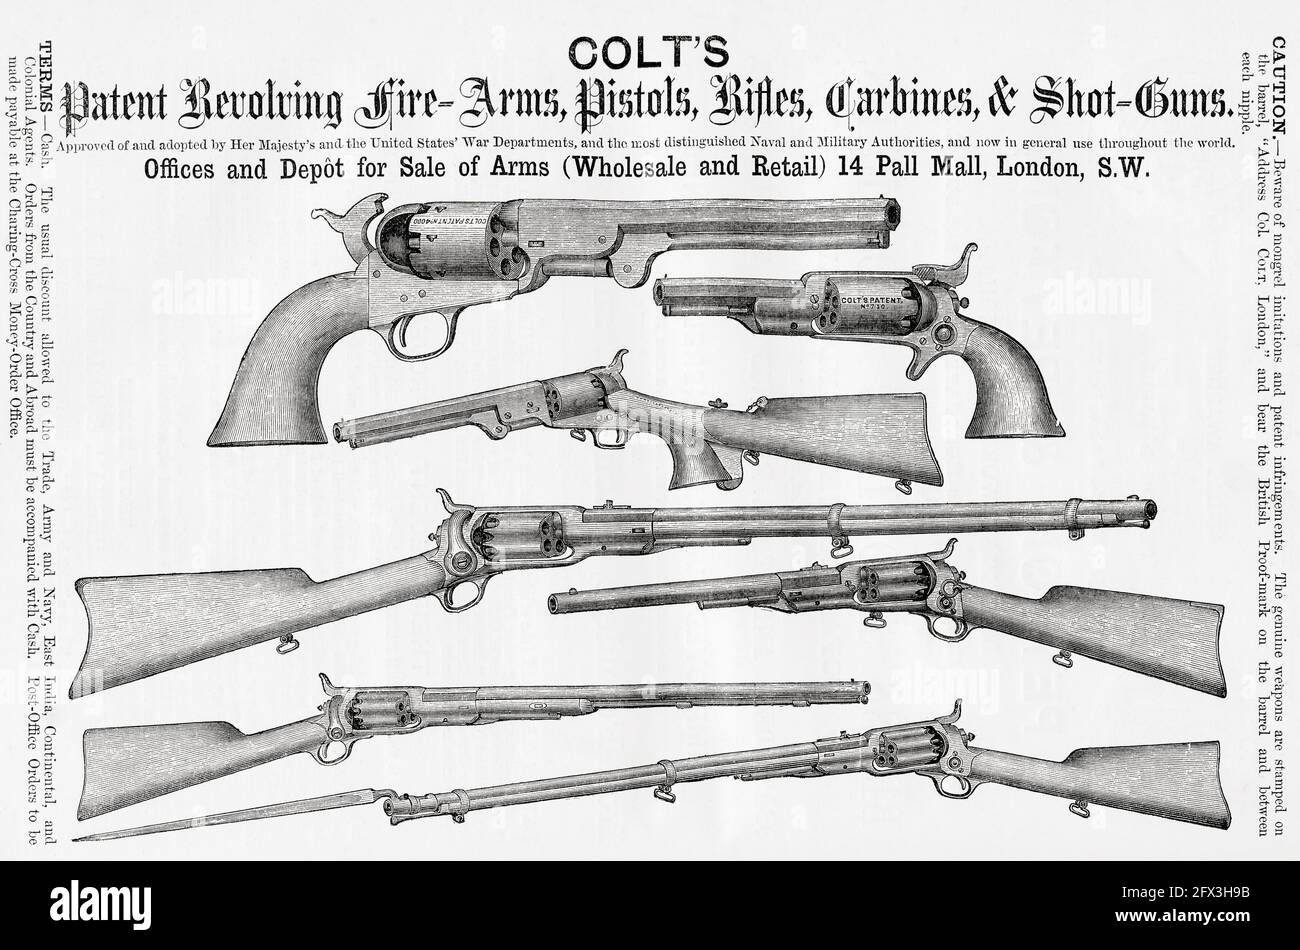 Werbung für Colt's Schusswaffen, Pistolen, Gewehre, Karbinen und Schrotflinten. Aus EINER prägnanten Geschichte der Internationalen Ausstellung von 1862, veröffentlicht 1862. Stockfoto